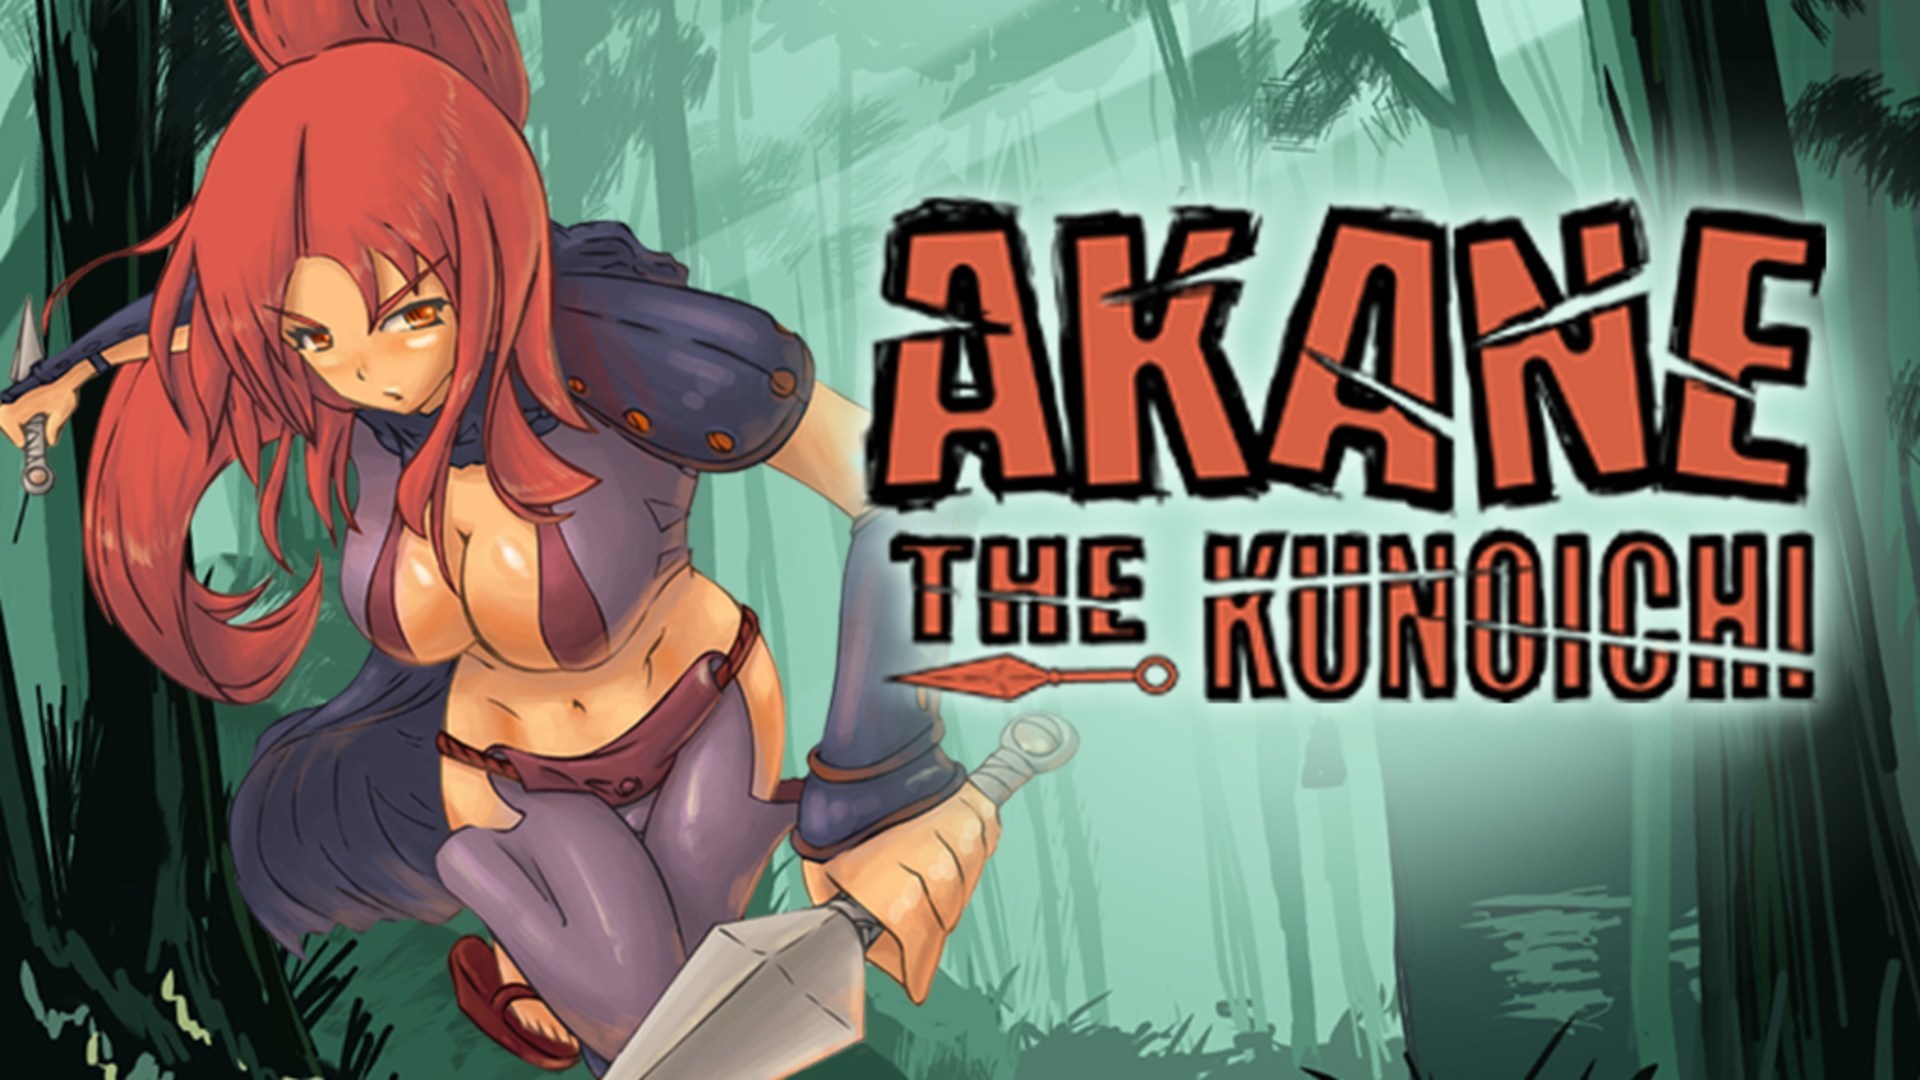 jaquette du jeu vidéo Akane the kunoichi